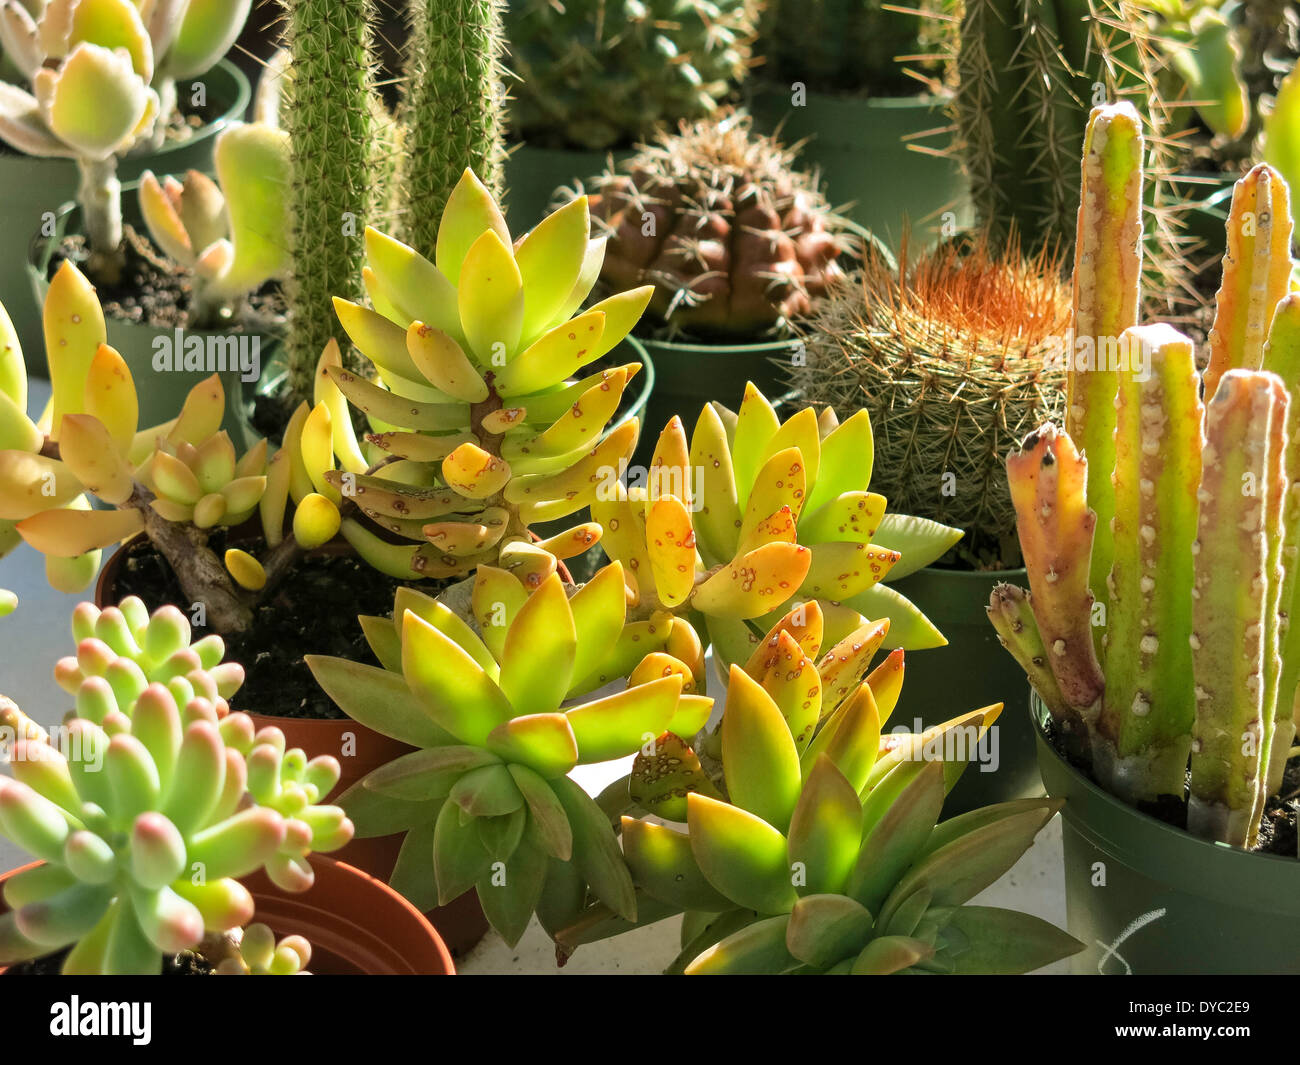 Visualización de cactus y plantas suculentas, Florida, EE.UU. Foto de stock